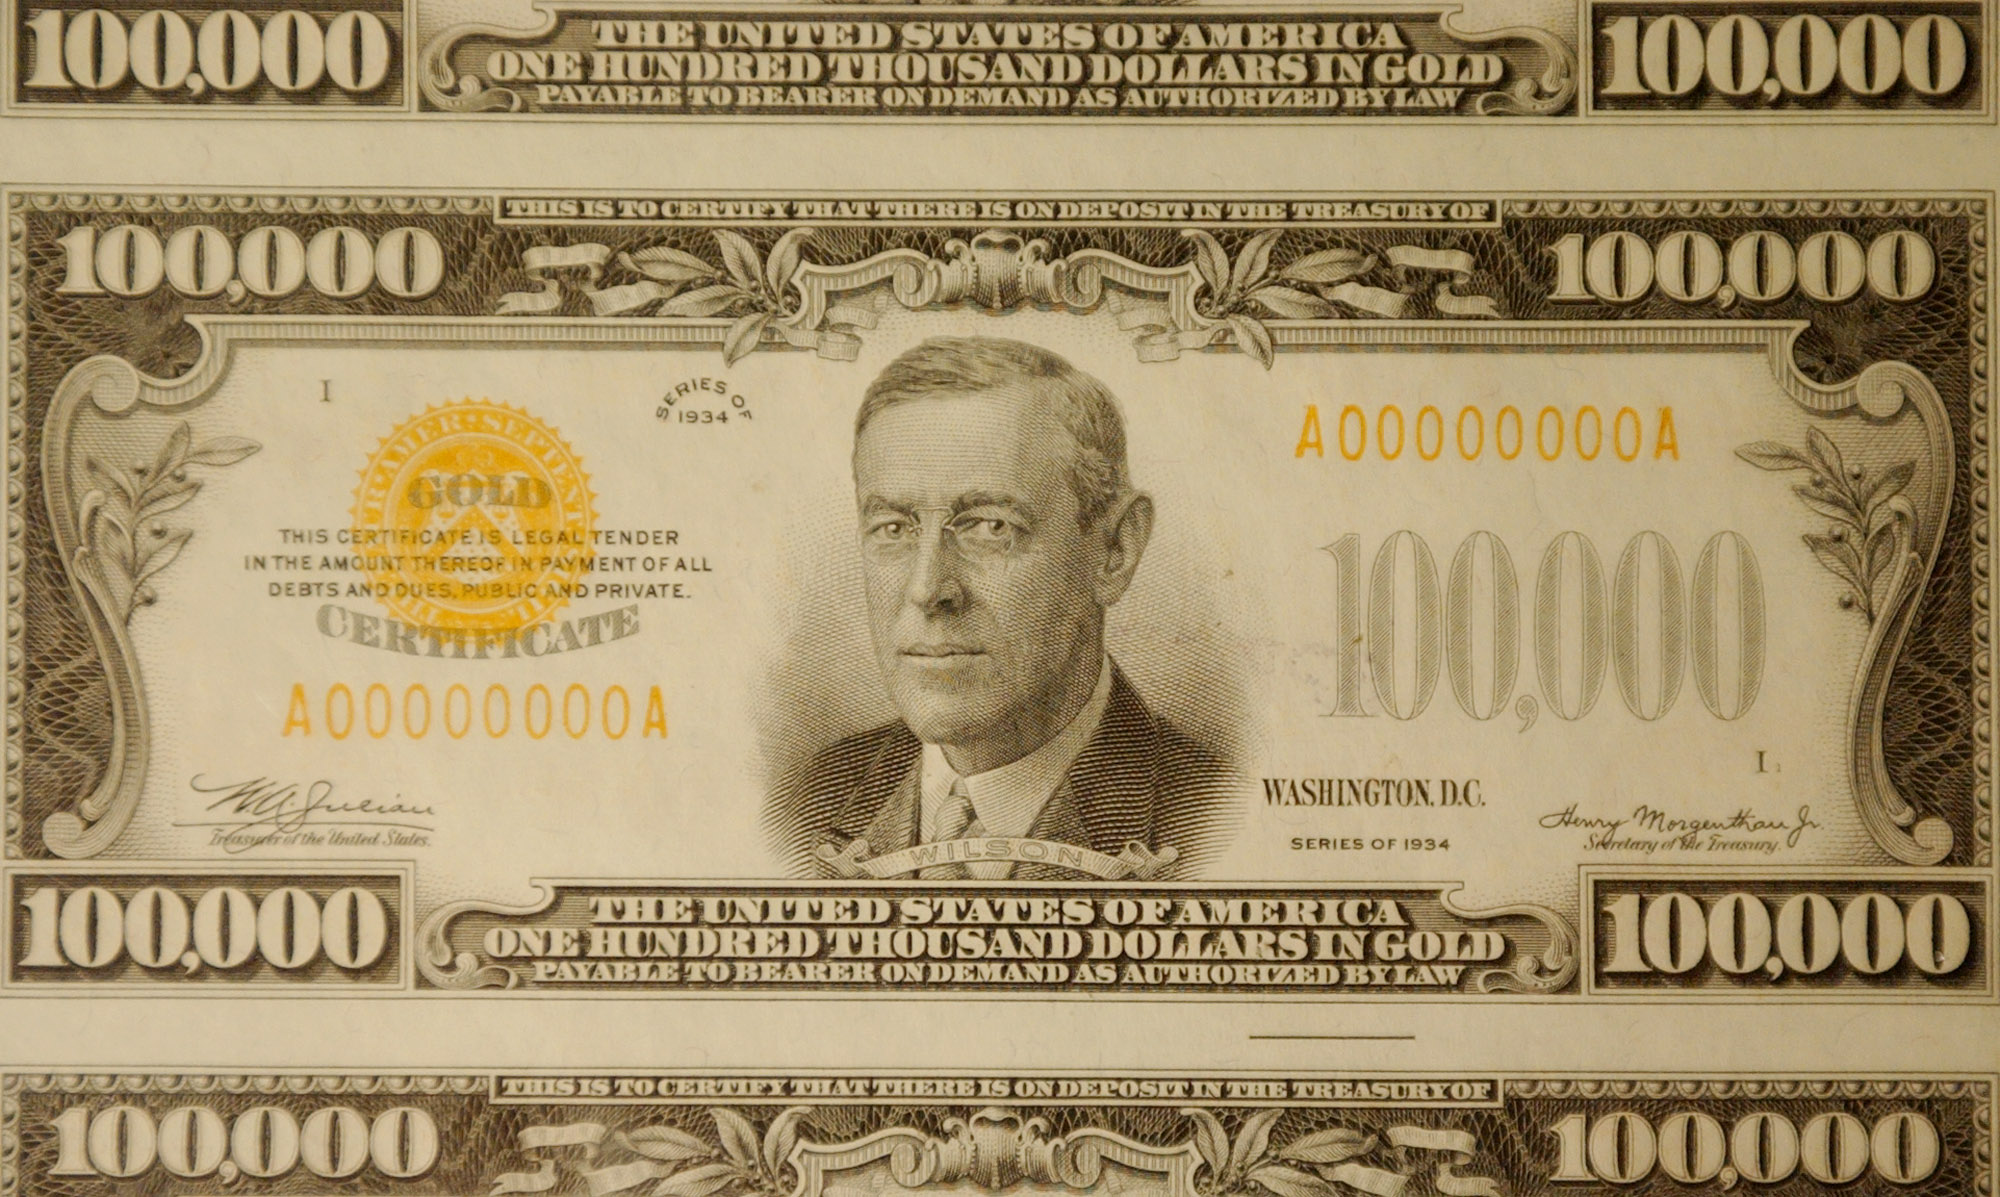 $100000 bill